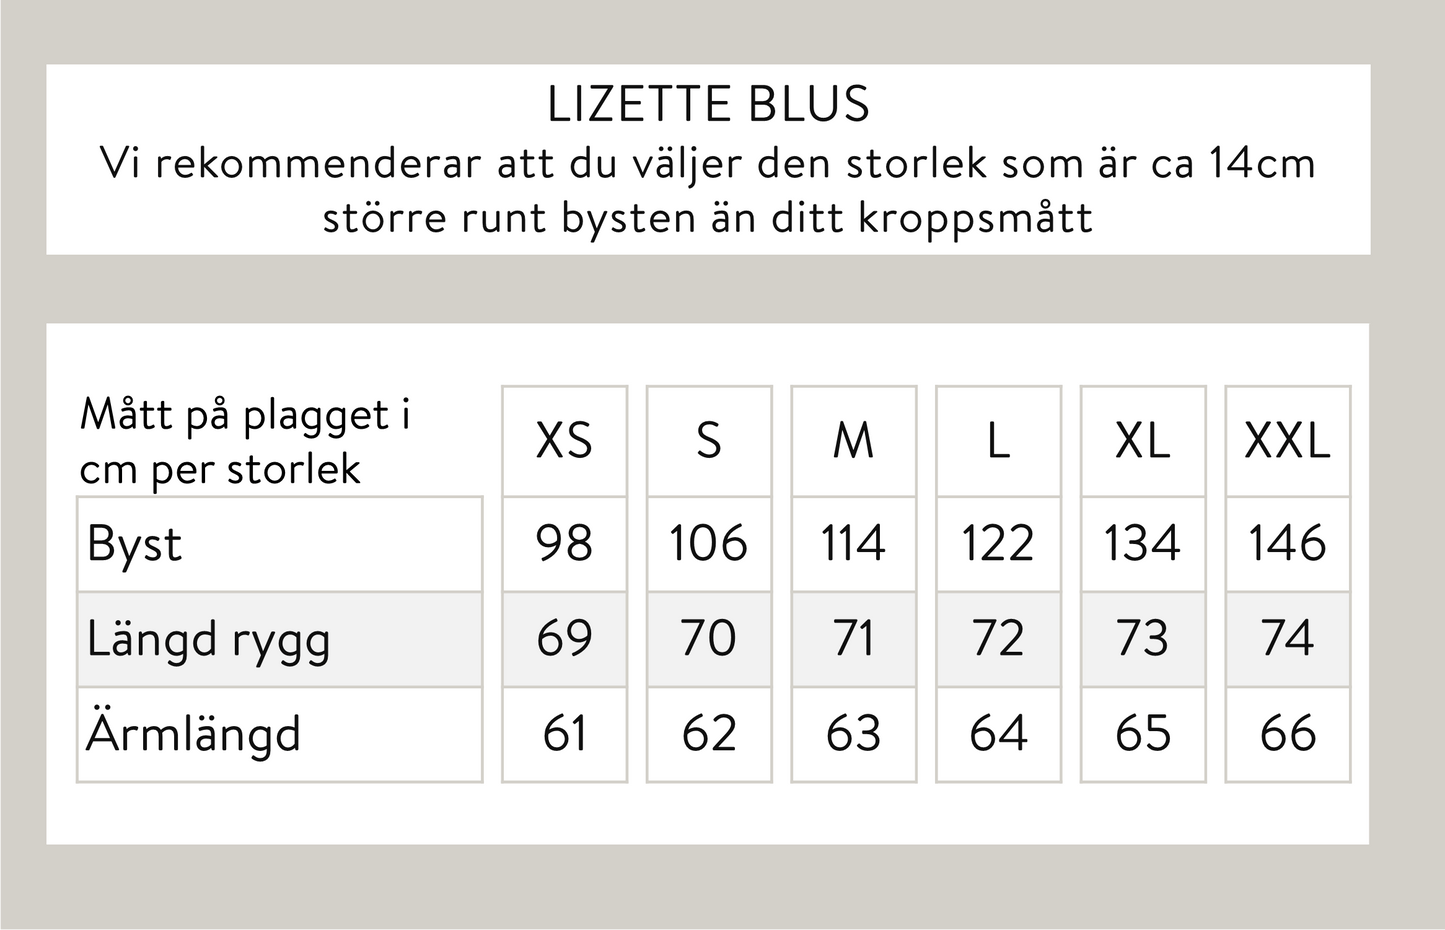 Lizette blus - Gul